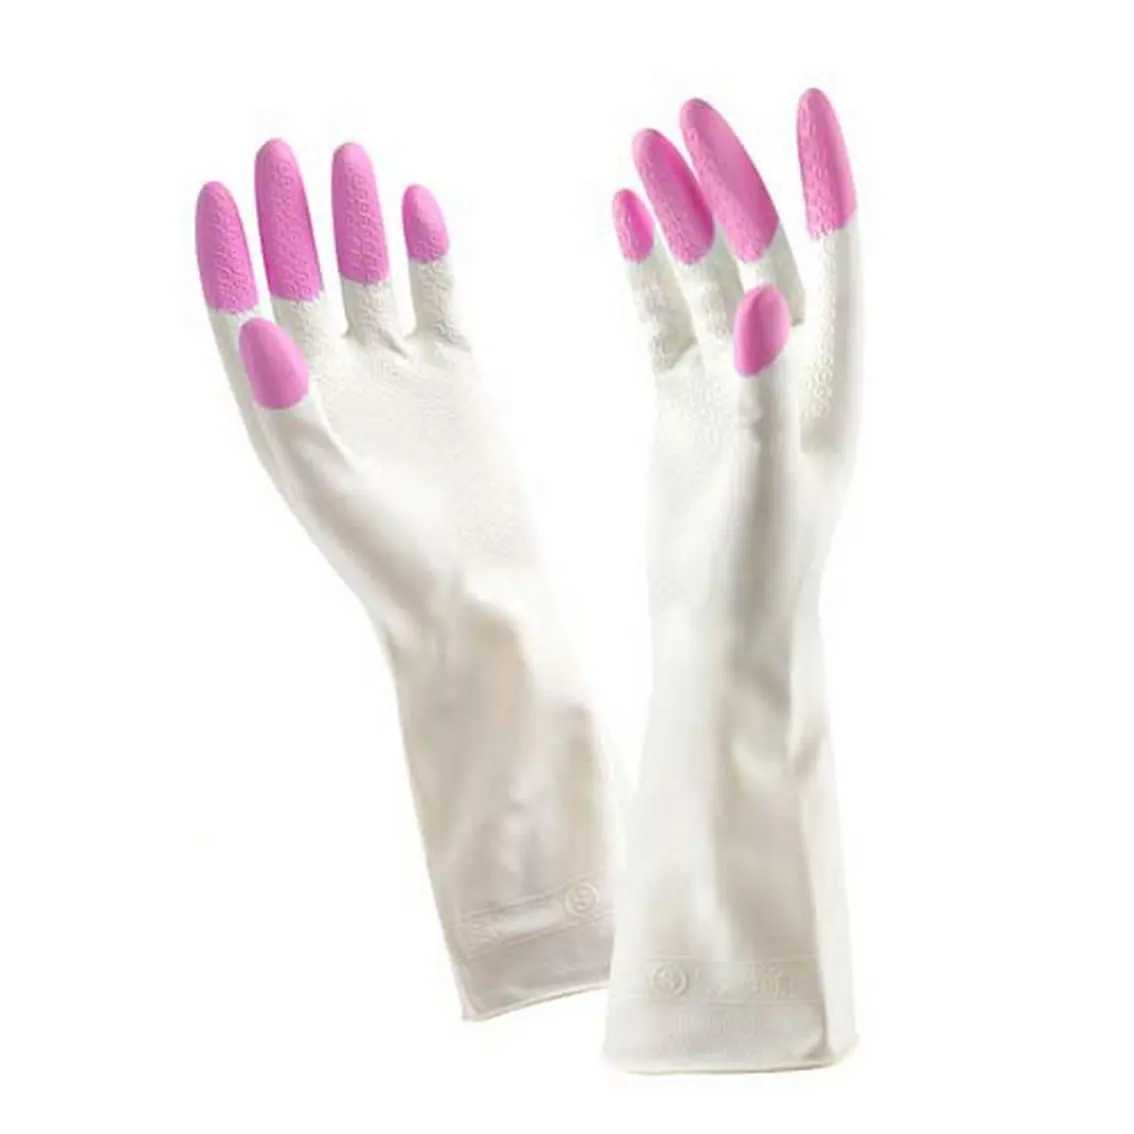 Купить розовые перчатки. Перчатки резиновые розовые. Перчатки хозяйственные резиновые белые. Корейские резиновые перчатки. Перчатки хозяйственные белые с розовым.